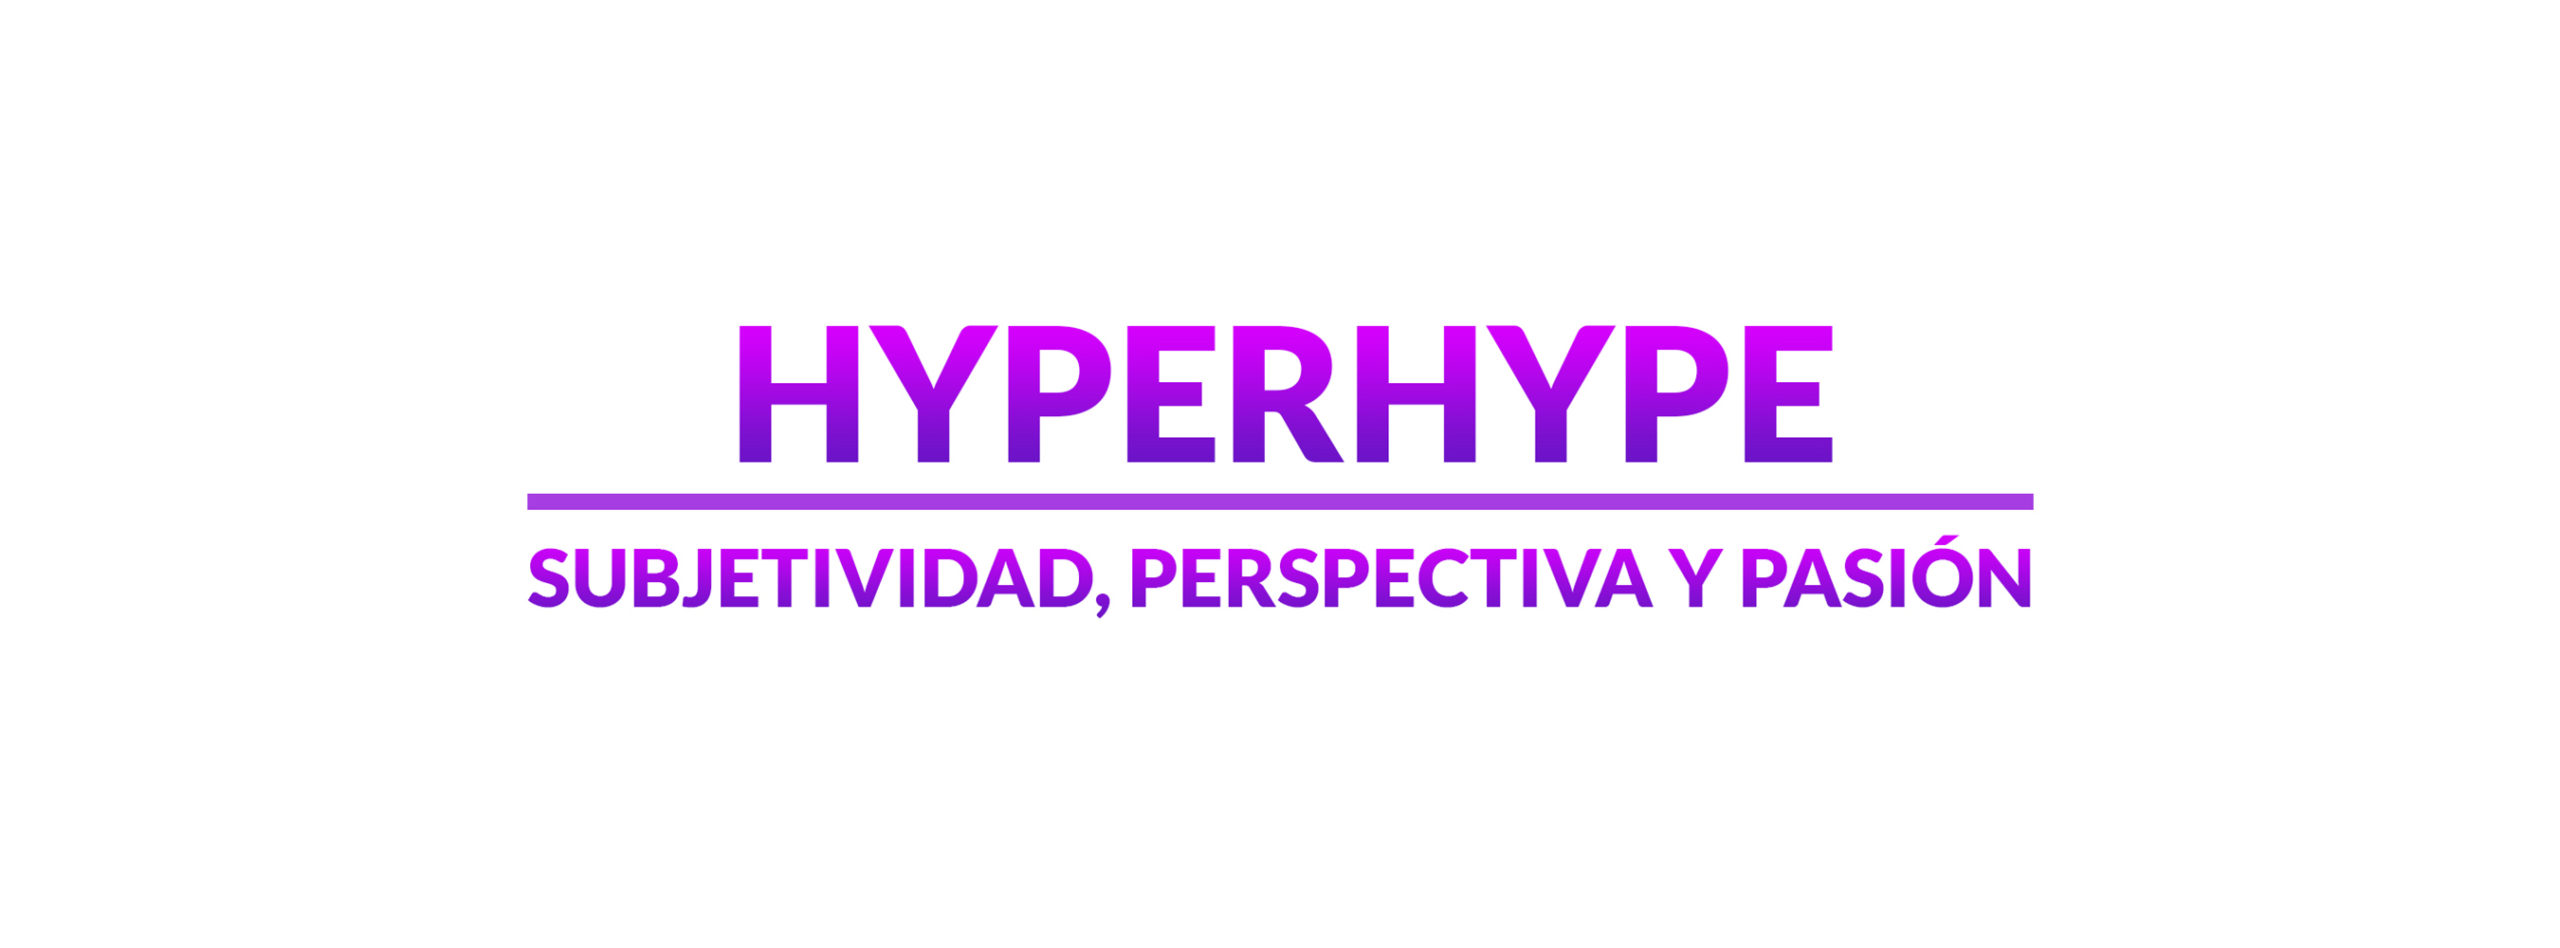 carlos.alvarez@hyperhype.es